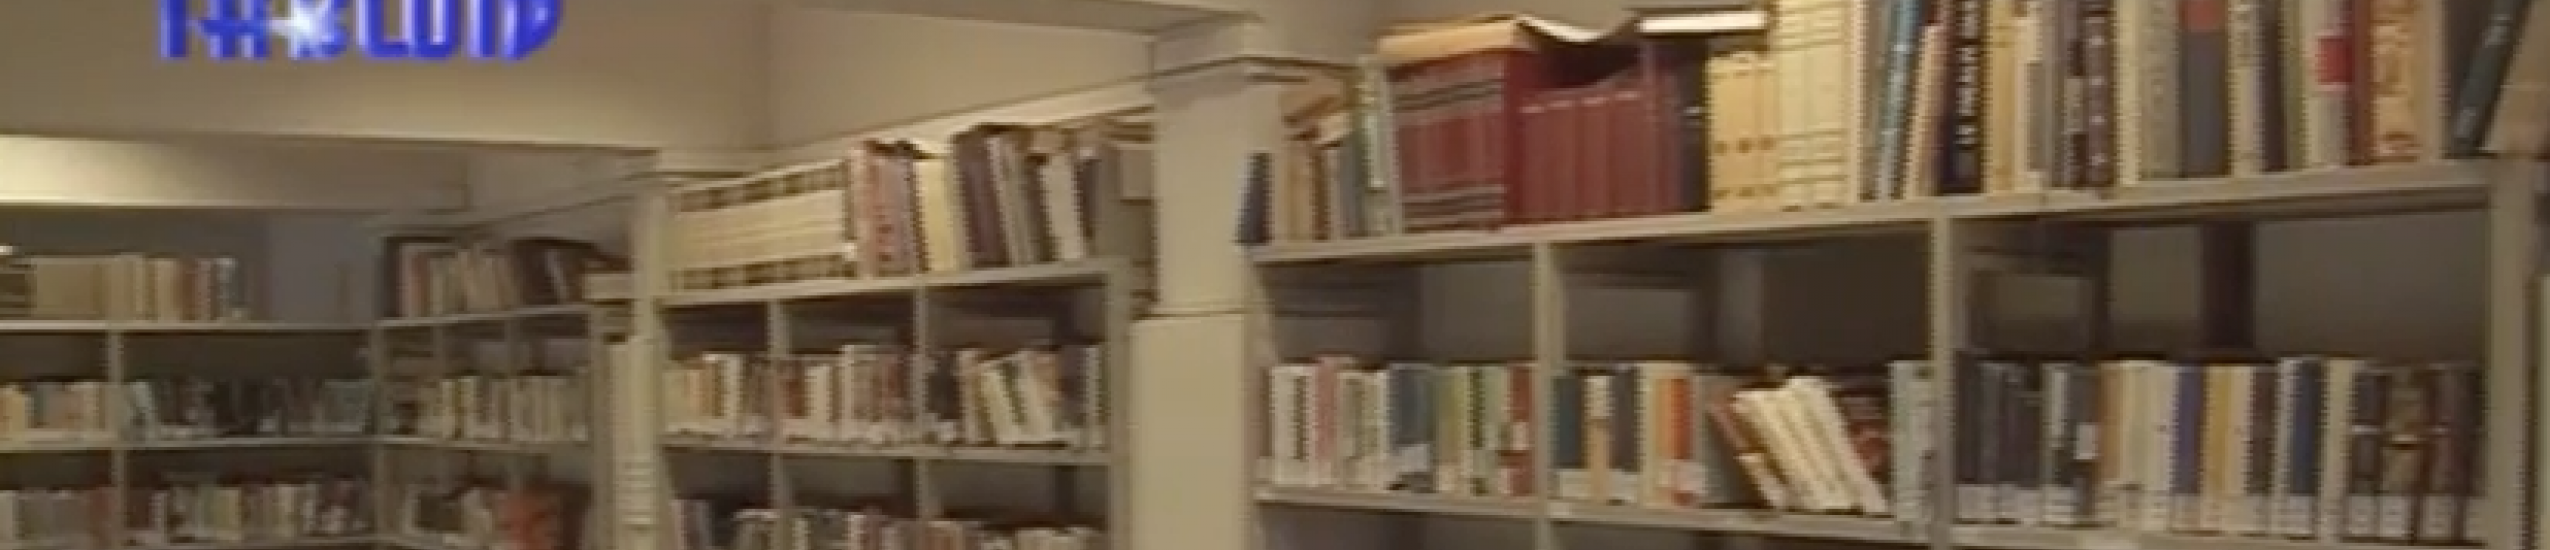 Biblioteche comunali, il centro servizi metropolitano è salvo (video di tabloid)